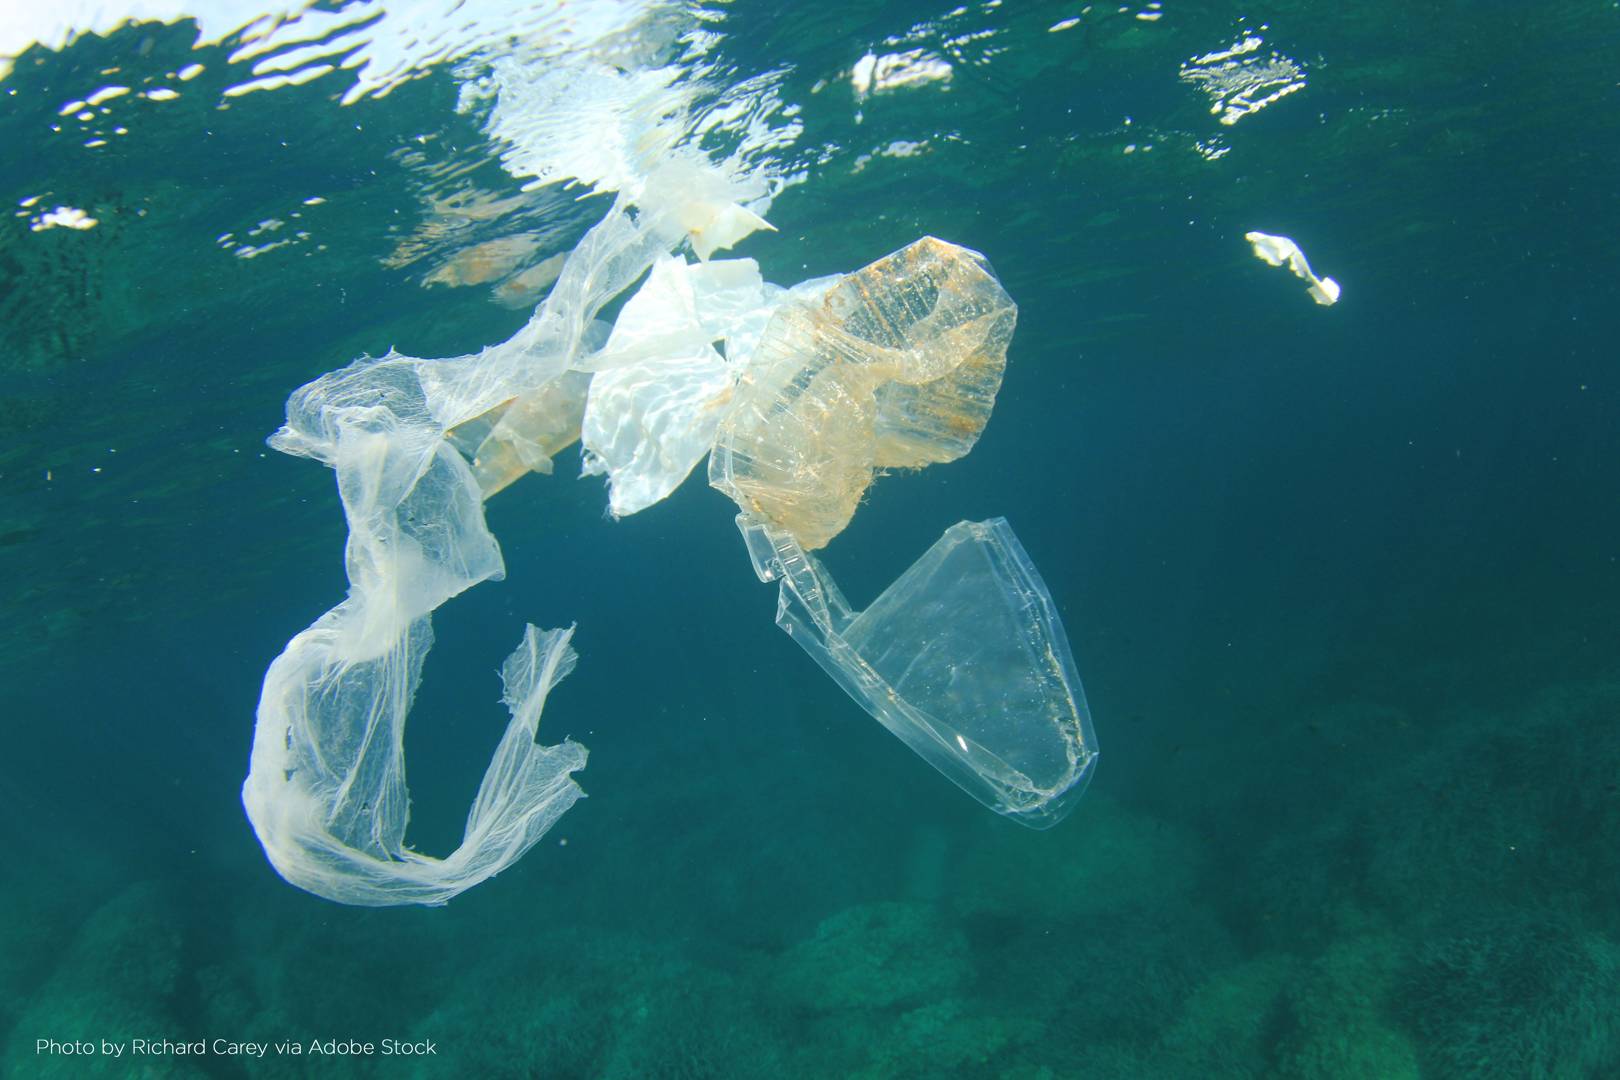 Ellen MacArthur launches $2 million prize to help solve plastic pollution